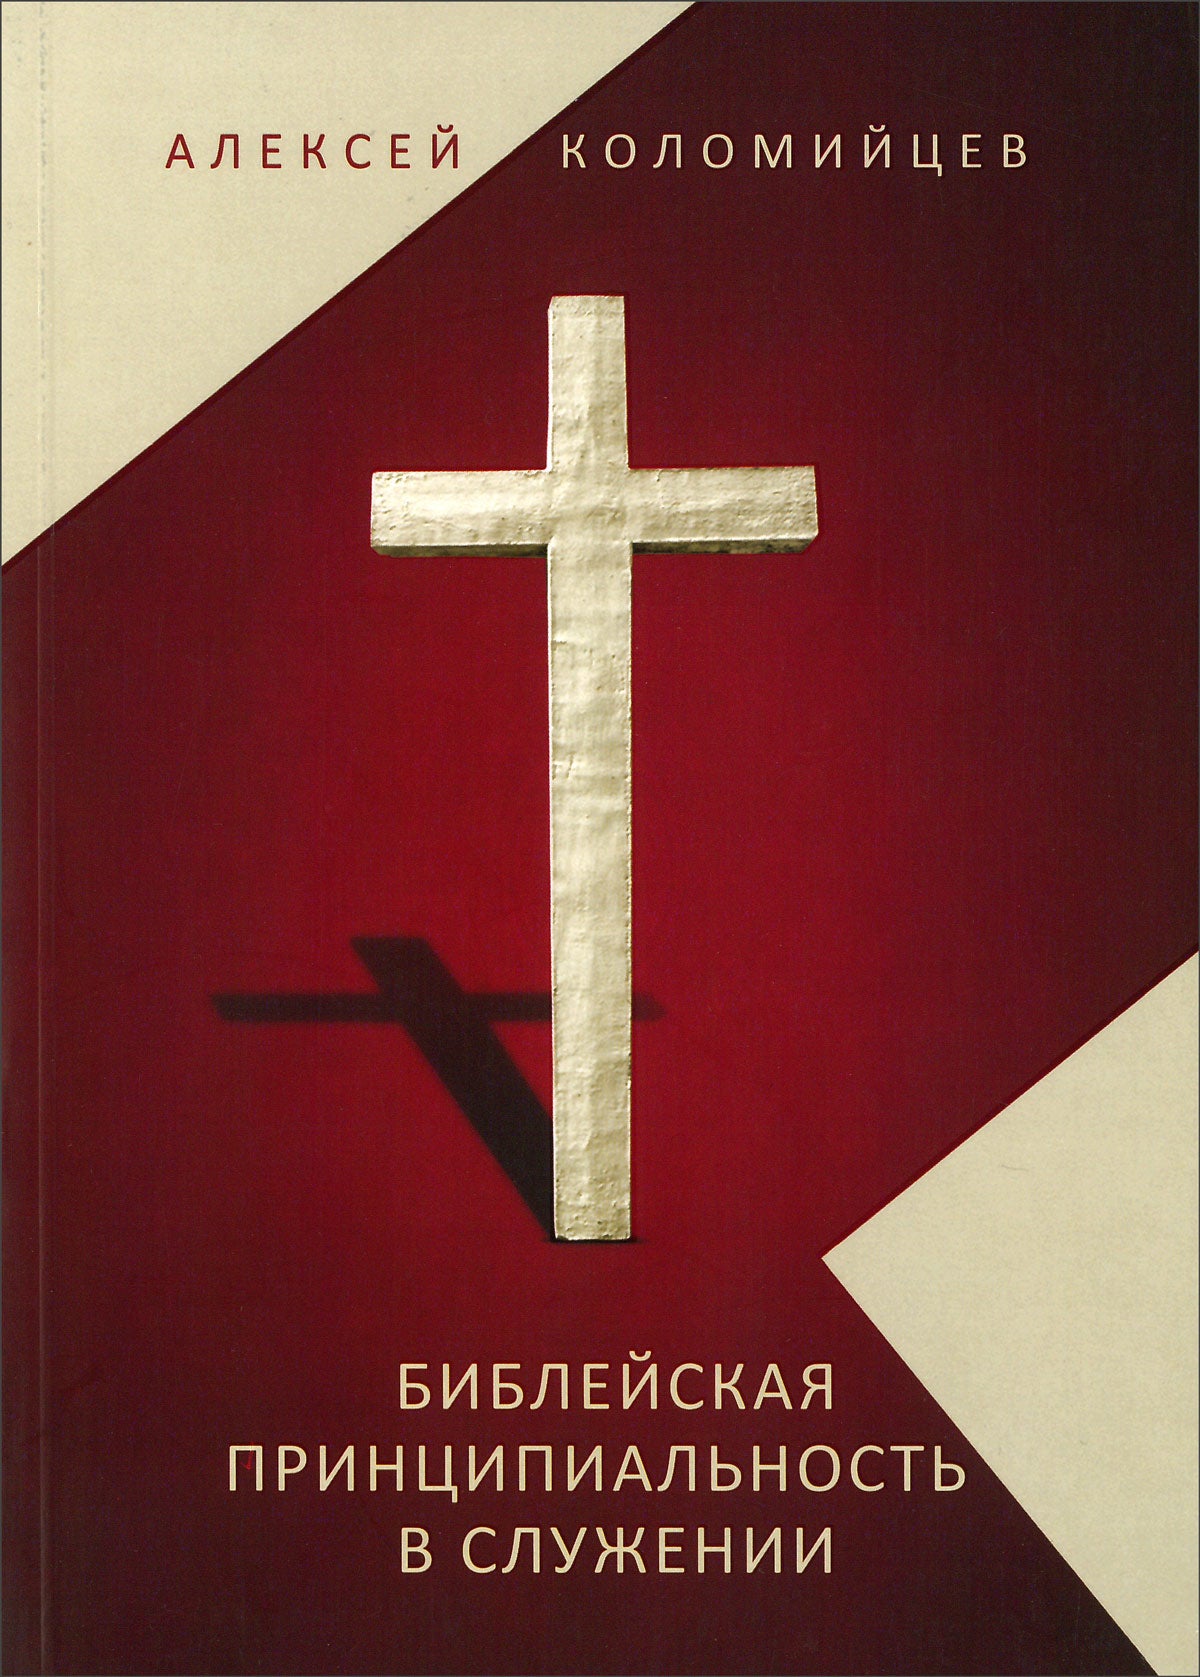 Библейская принципиальность в служении - Алексей Коломийцев - EBTC